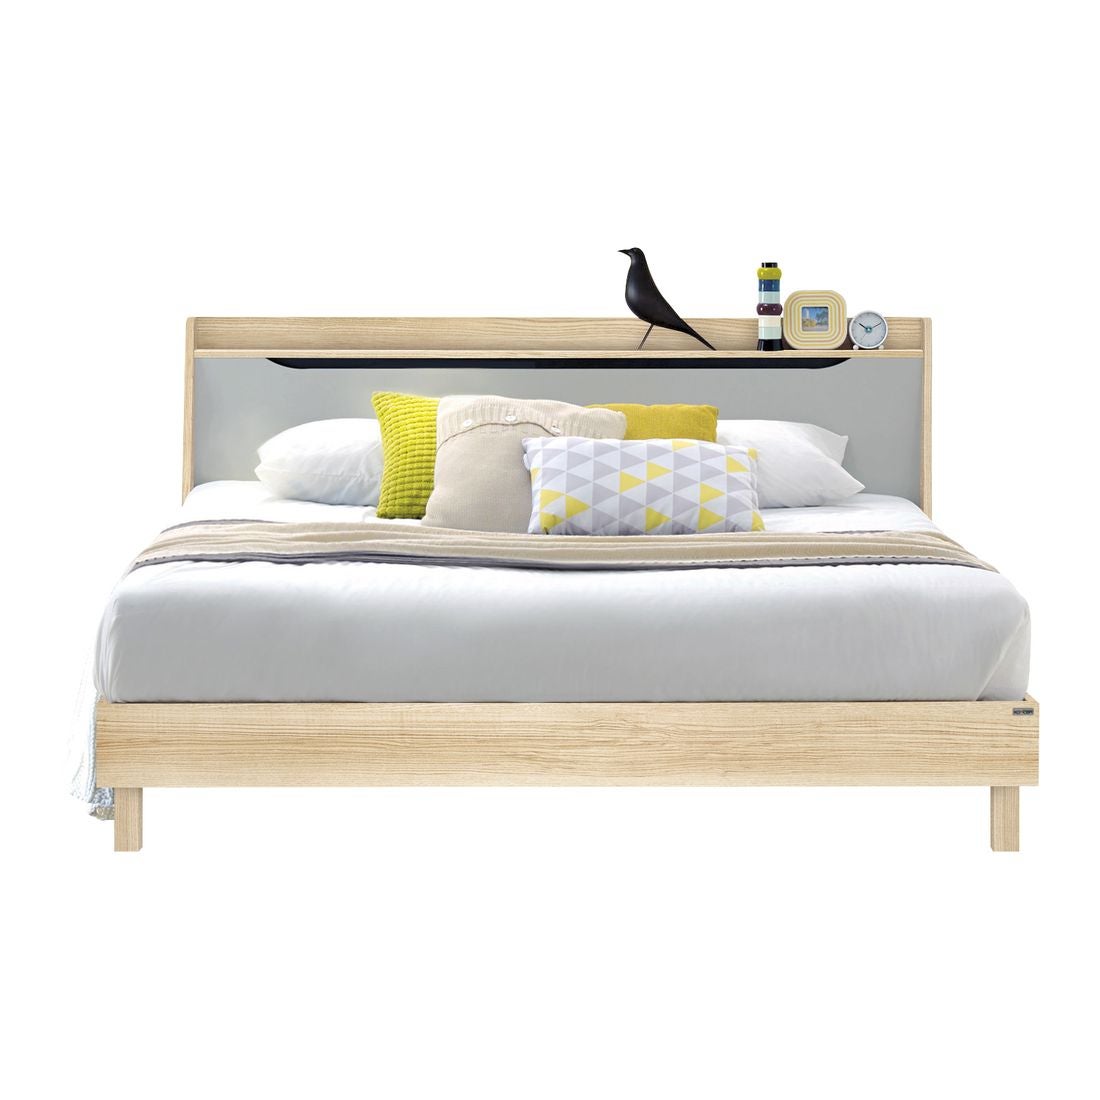 ชุดห้องนอน เตียง รุ่น Backus สีสีโอ๊ค-SB Design Square